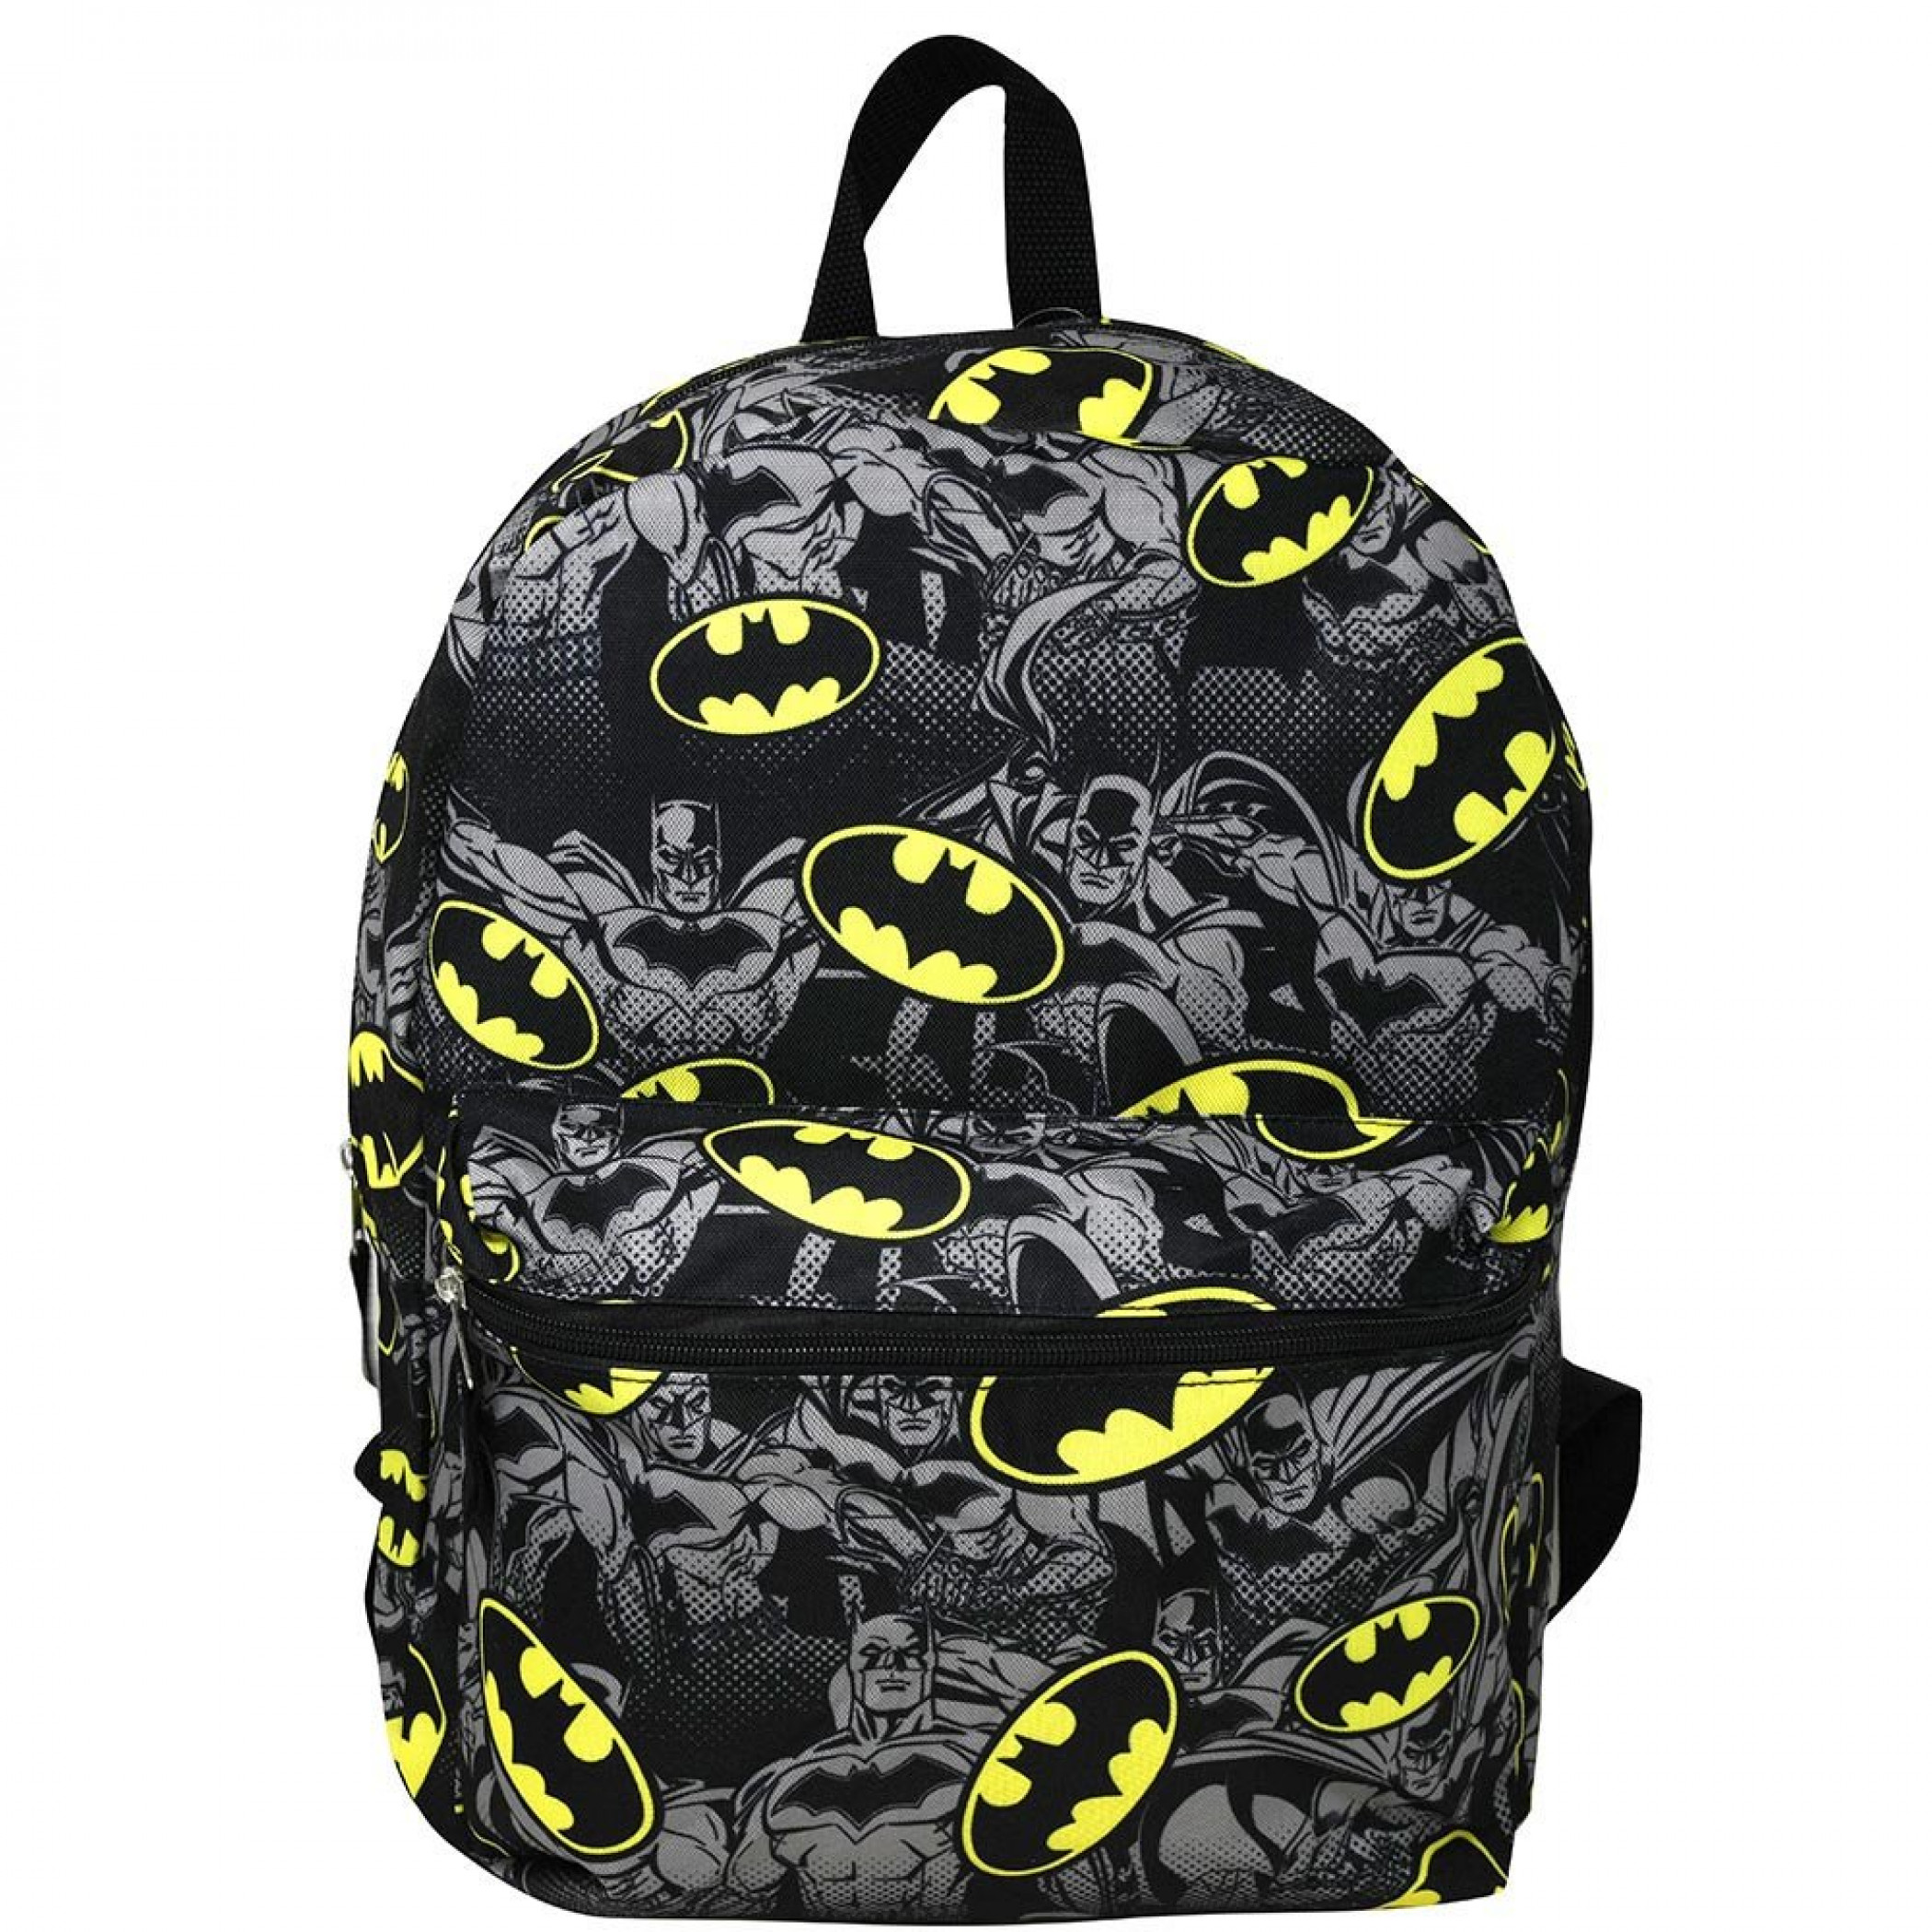 Batman Bat Symbol Half-Tone All Over Print 16" Backpack